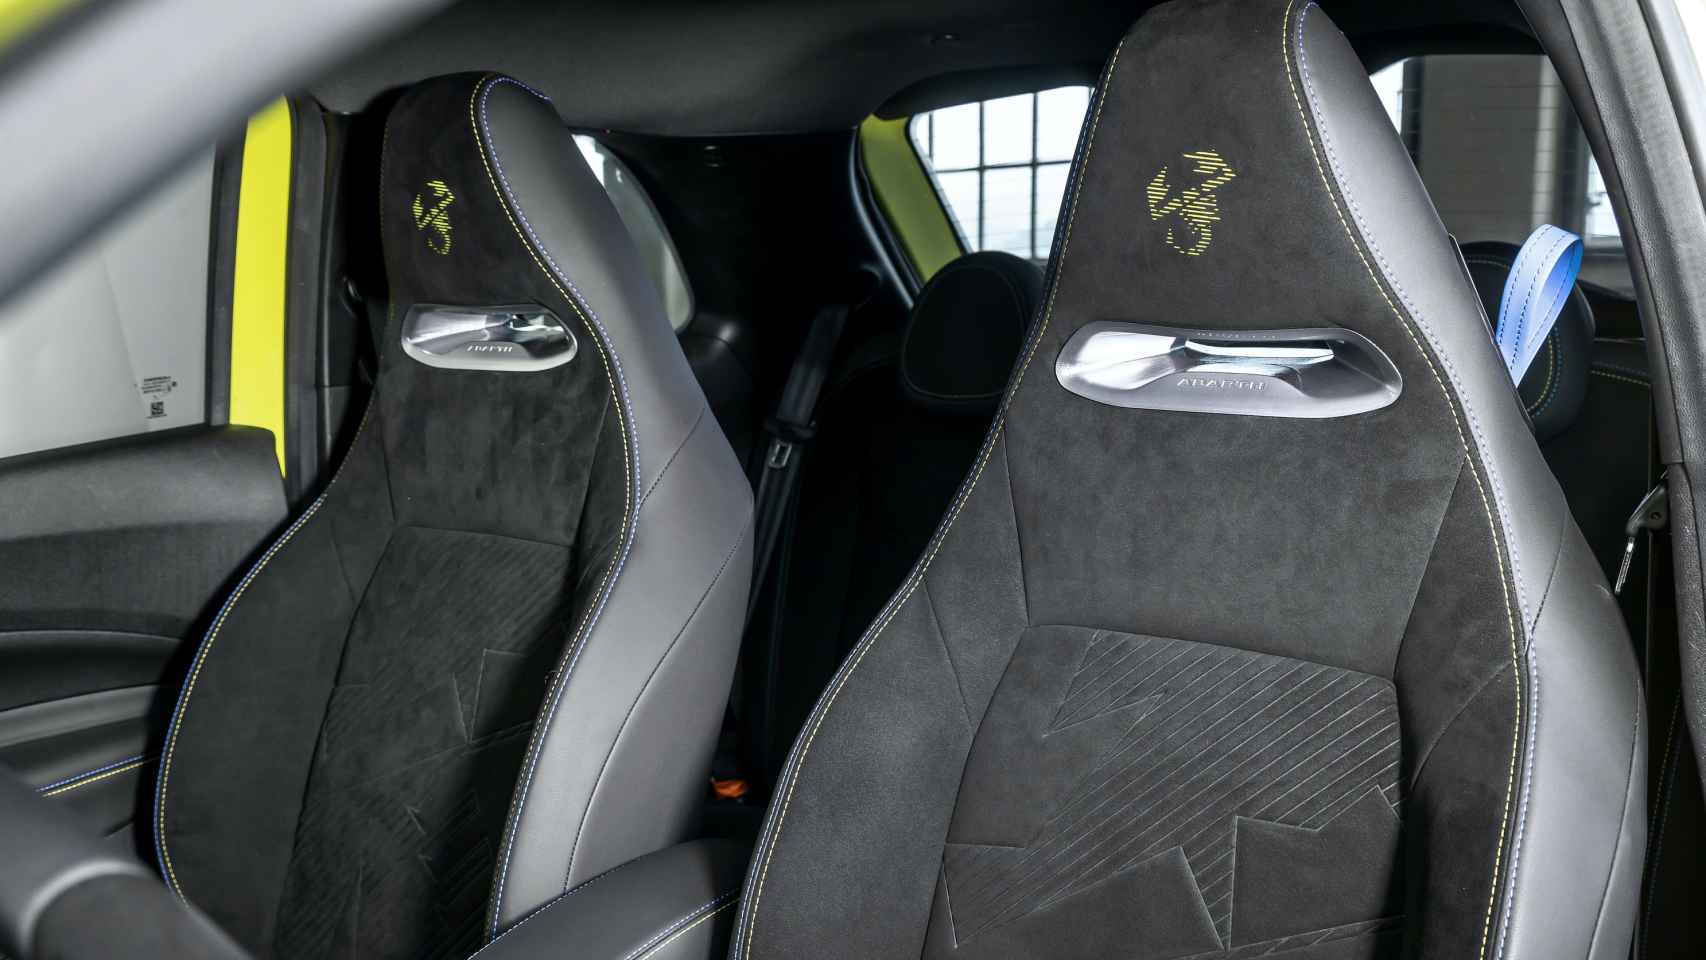 El Abarth 500e estrena un nuevo diseño para sus asientos deportivos con el escorpión estampado en alcántara.